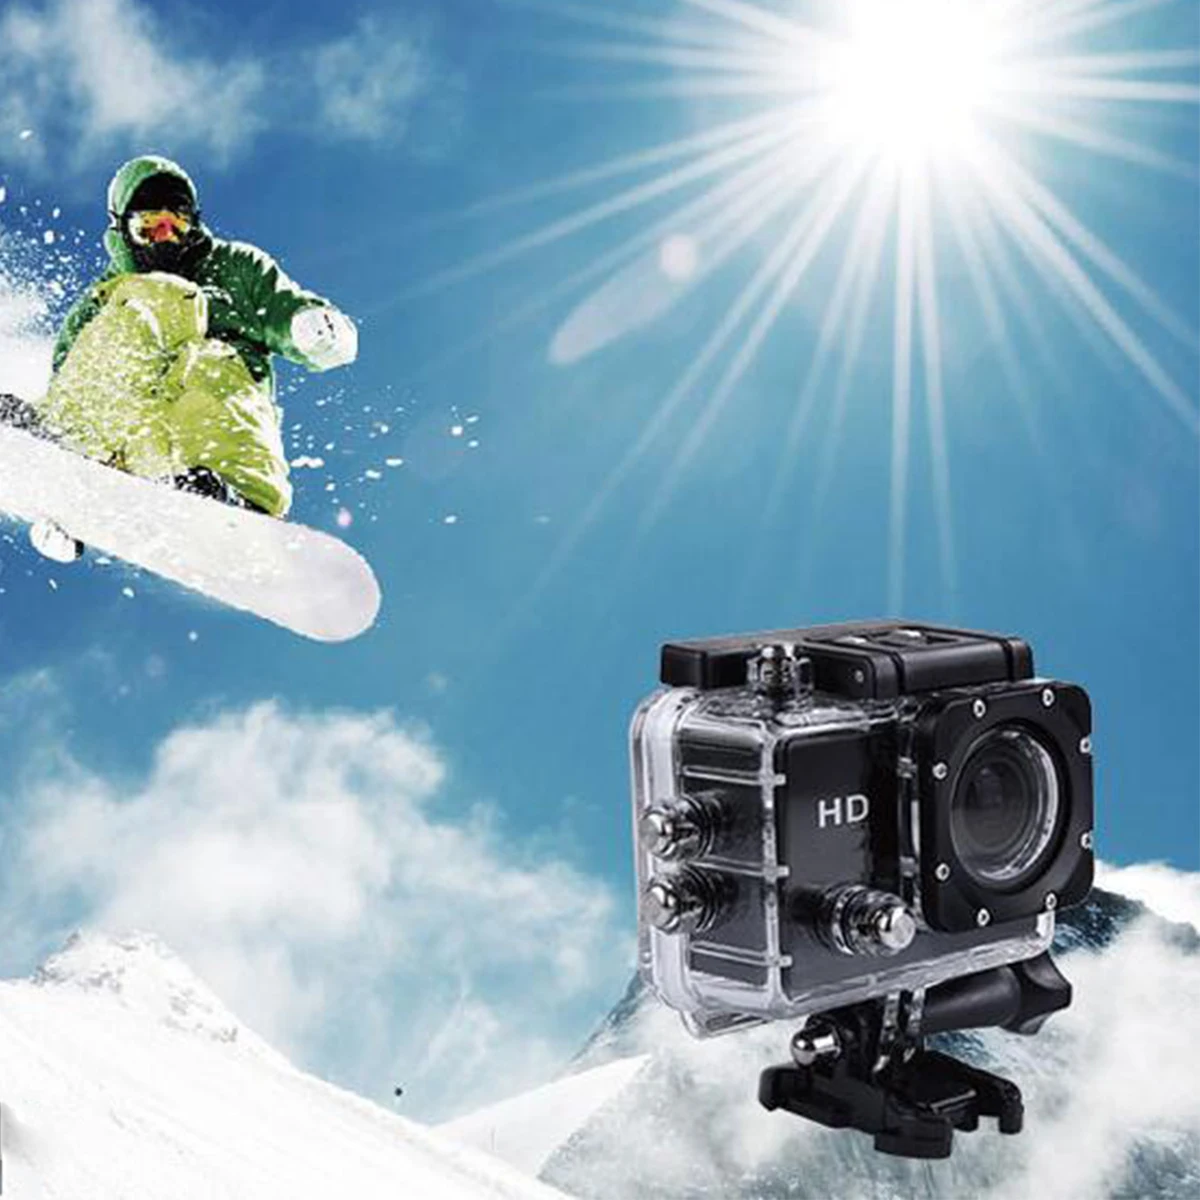 SJ4000 экшн-камера Дайвинг 30 м Водонепроницаемый 1080P Full HD Go подводная спортивная камера для шлема Спорт DV 12MP фото Пиксельная камера